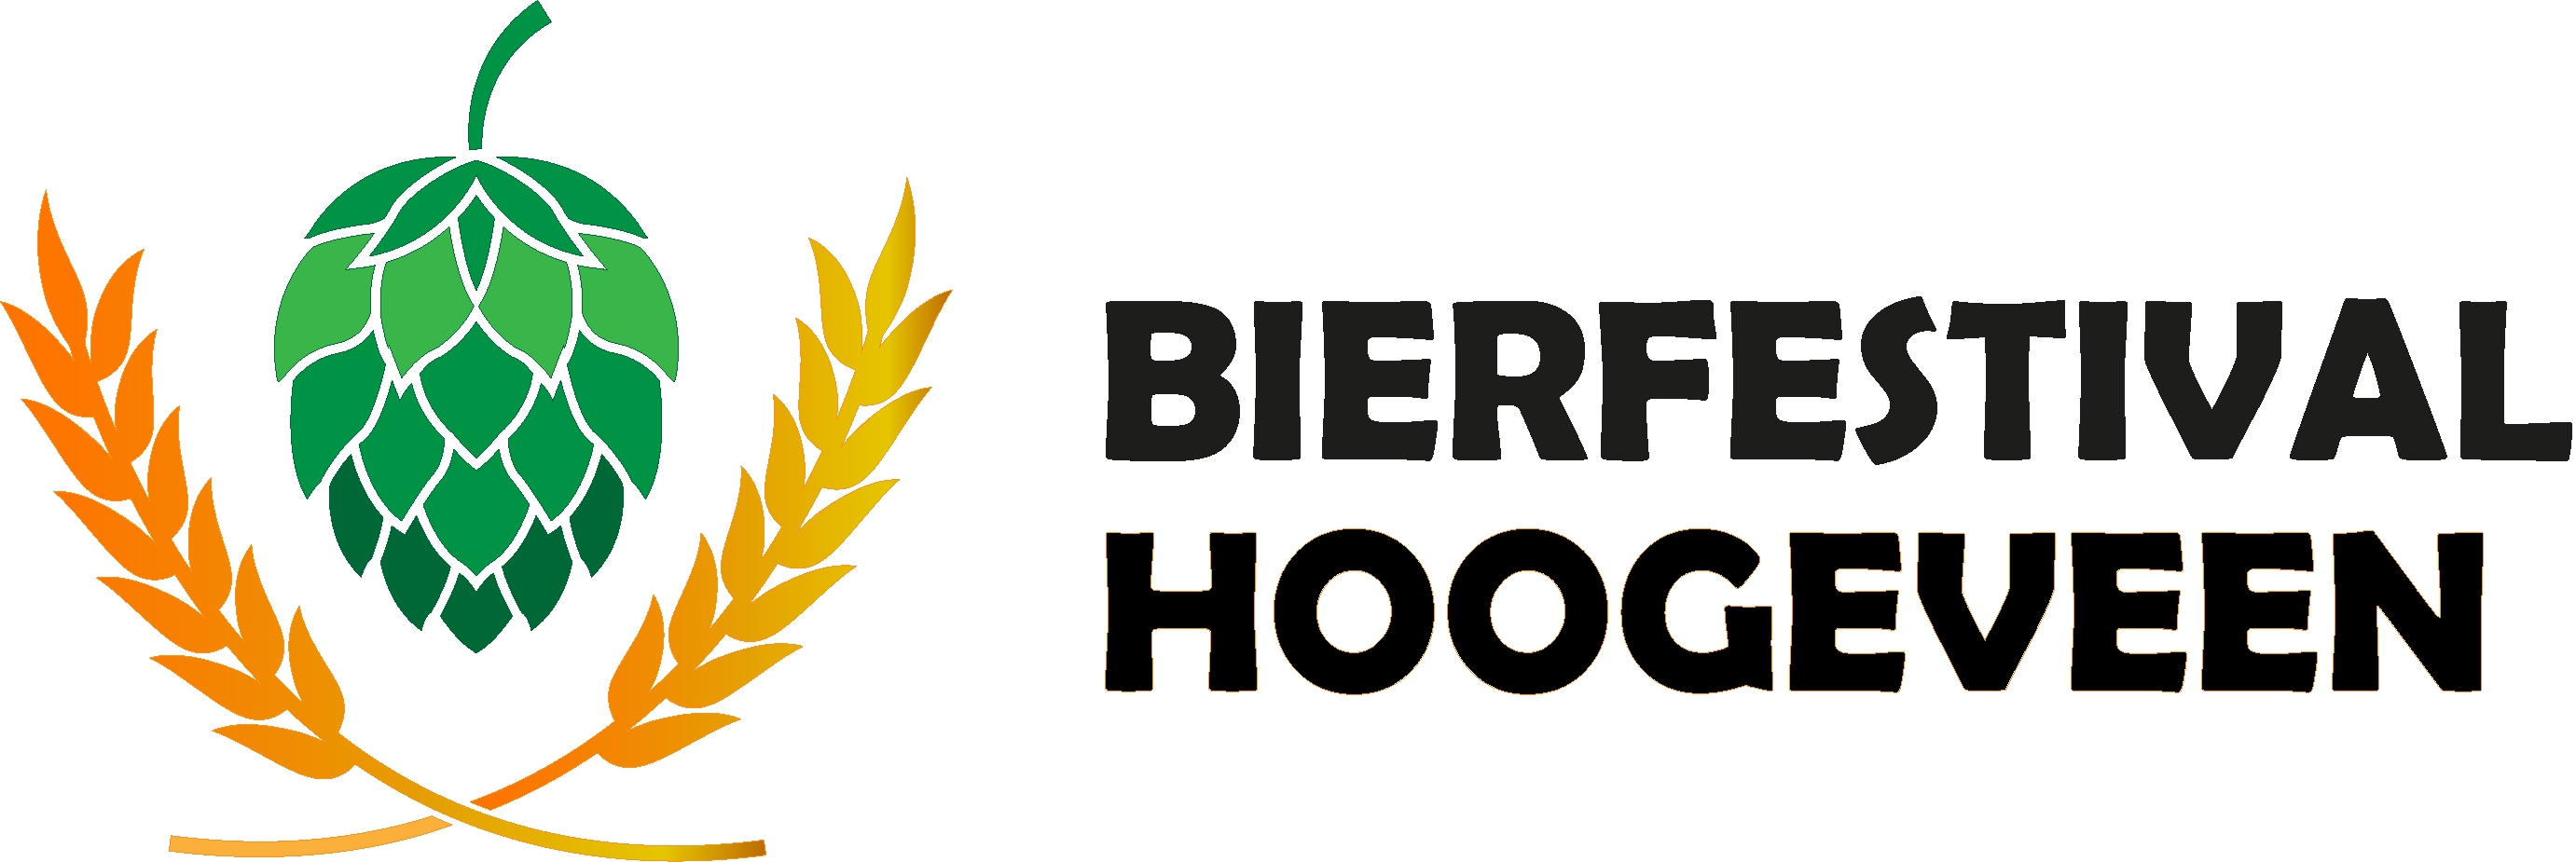 Bierfestival Hoogeveen